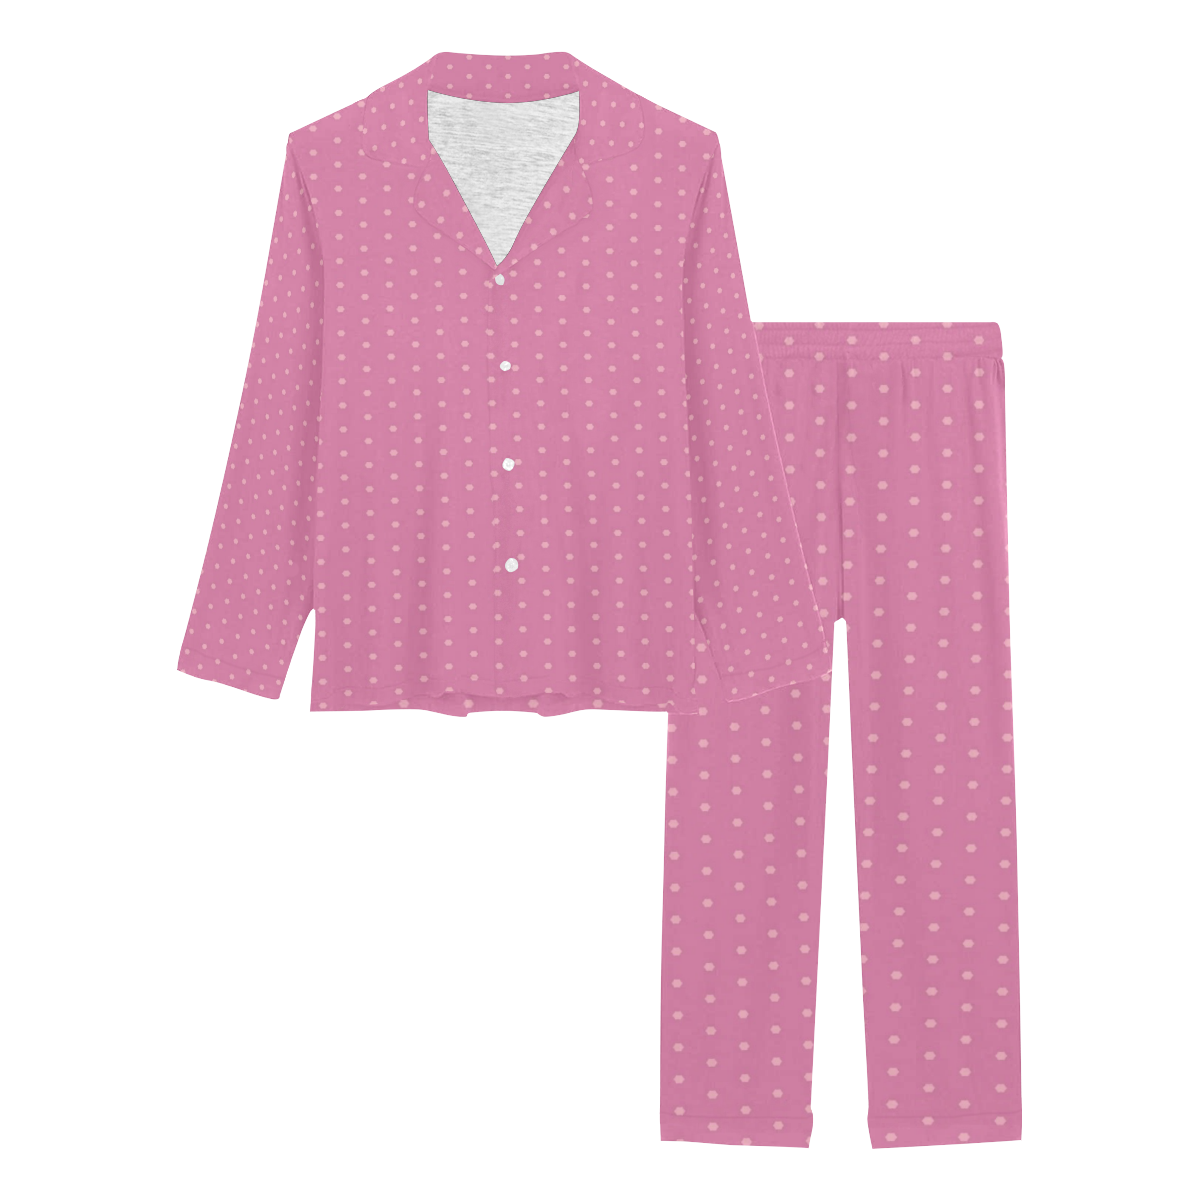 Polka Dotted Pink Women's Long Pajama Set